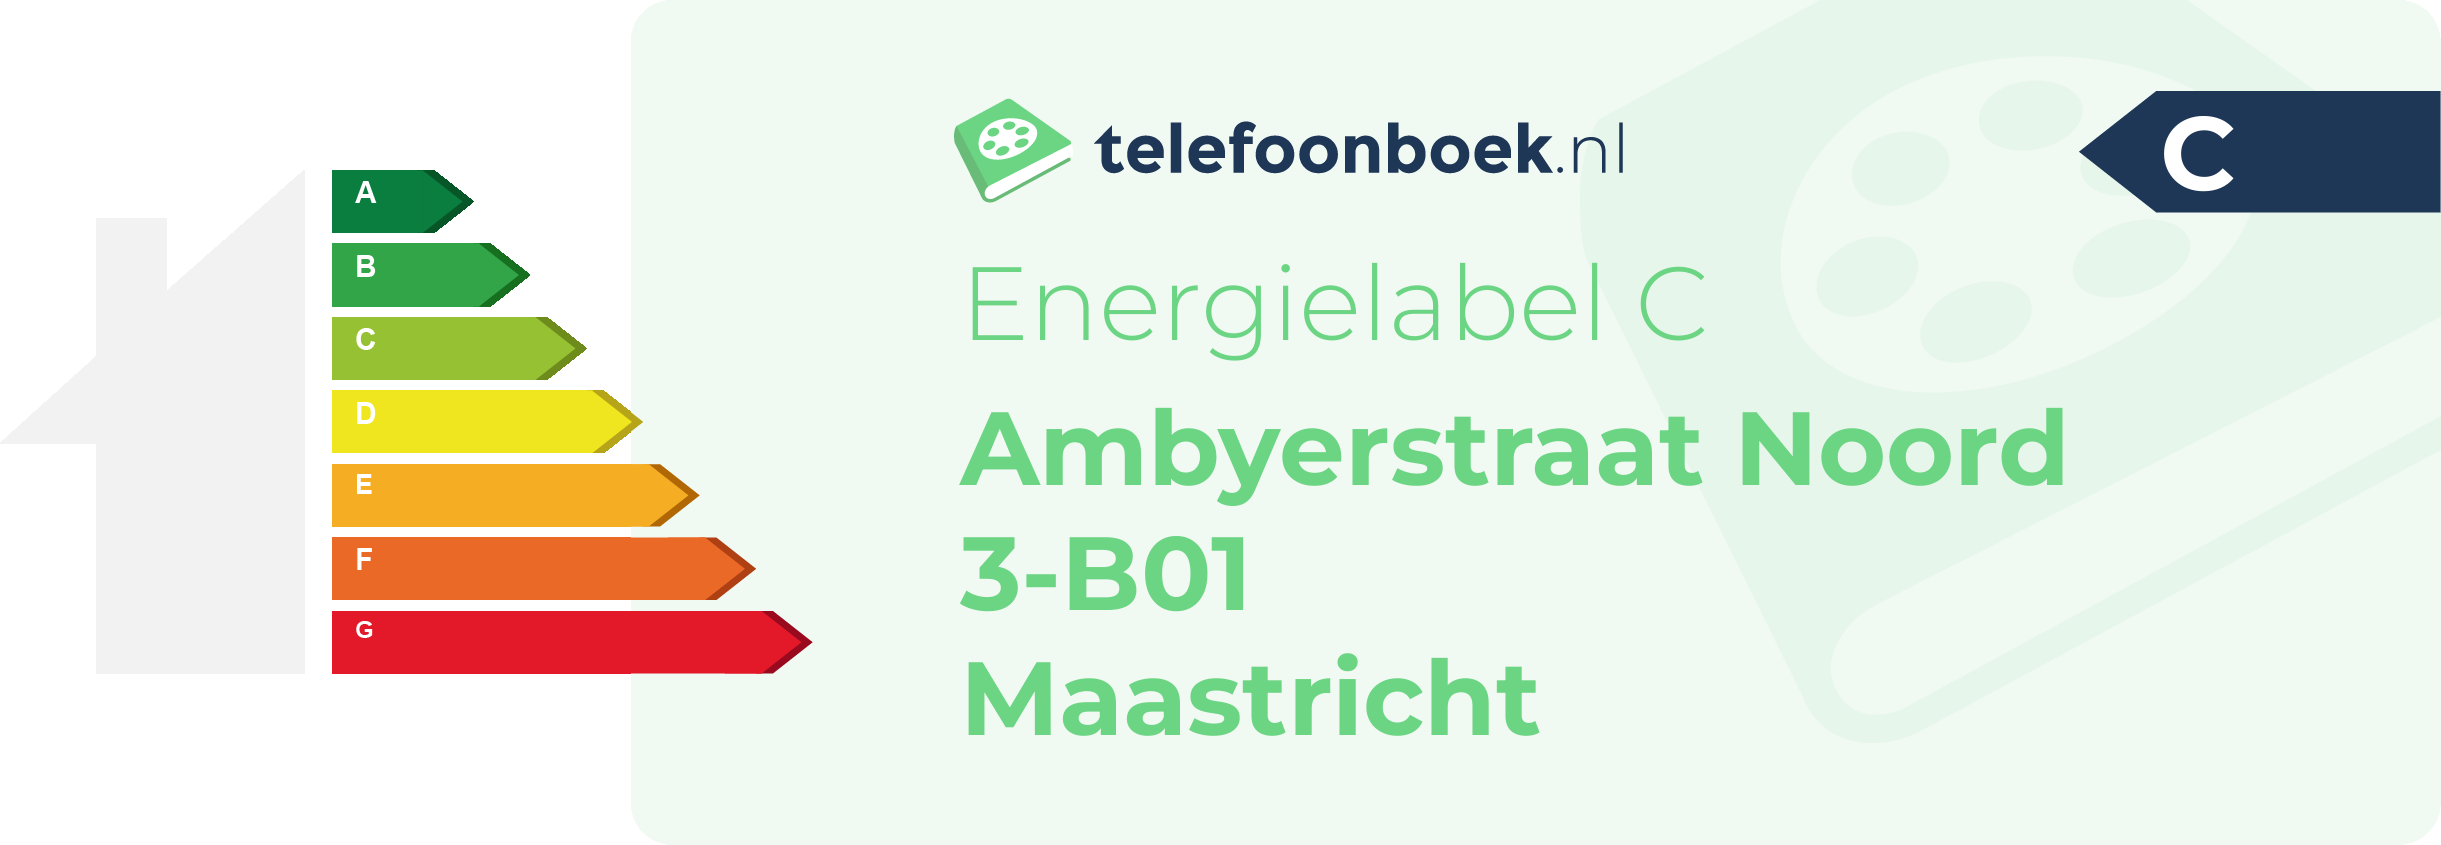 Energielabel Ambyerstraat Noord 3-B01 Maastricht